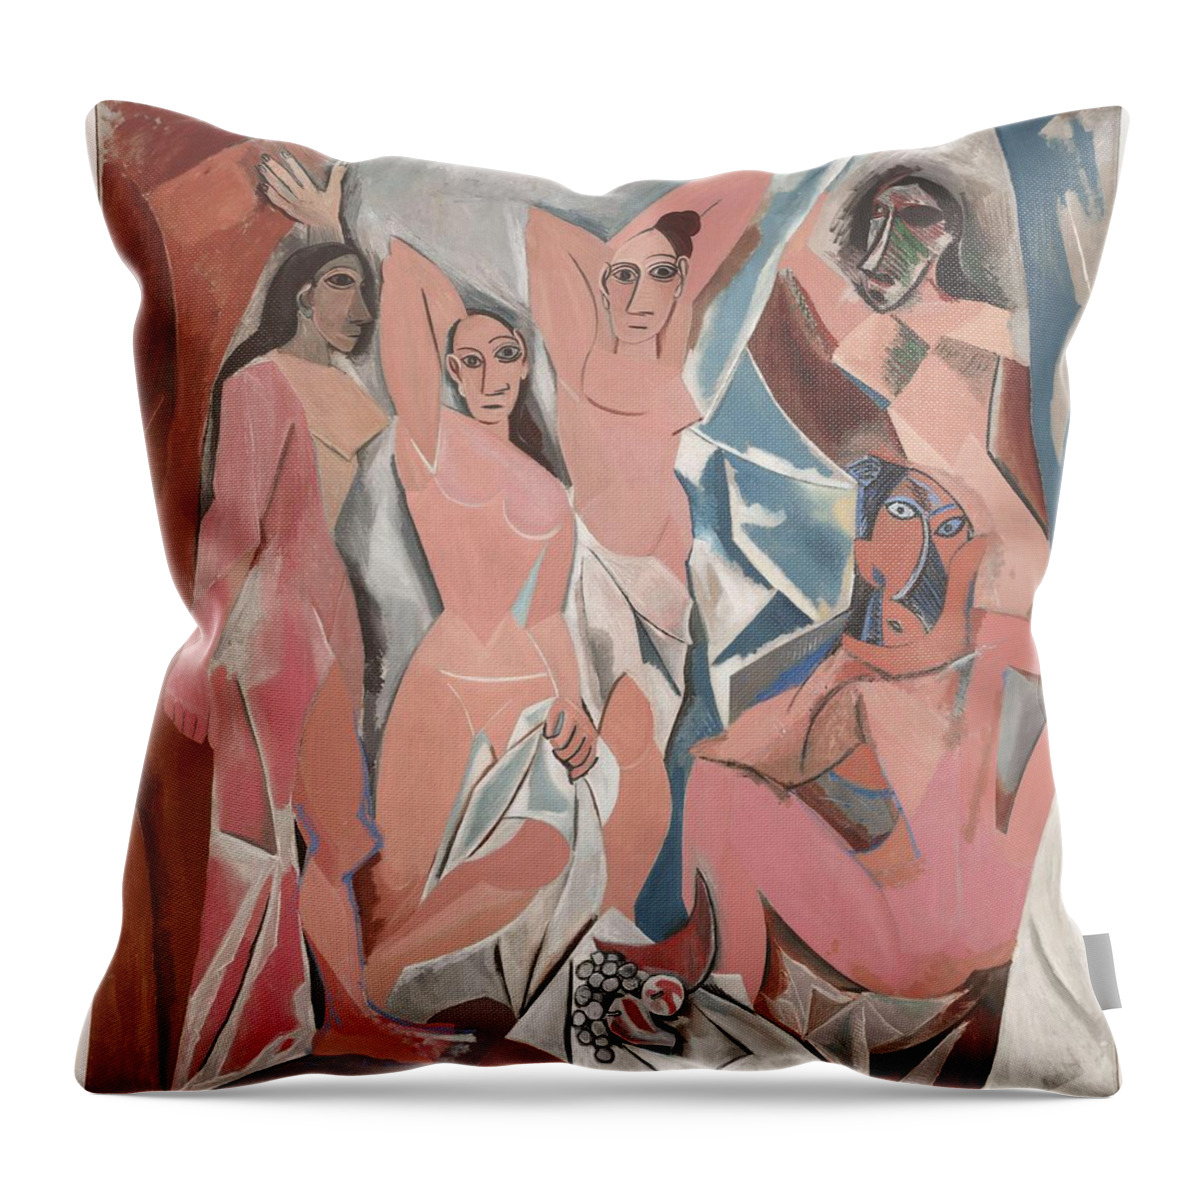 Les Demoiselles D'avignon Throw Pillow featuring the photograph Les Demoiselles d'Avignon by Picasso by Craig David Morrison